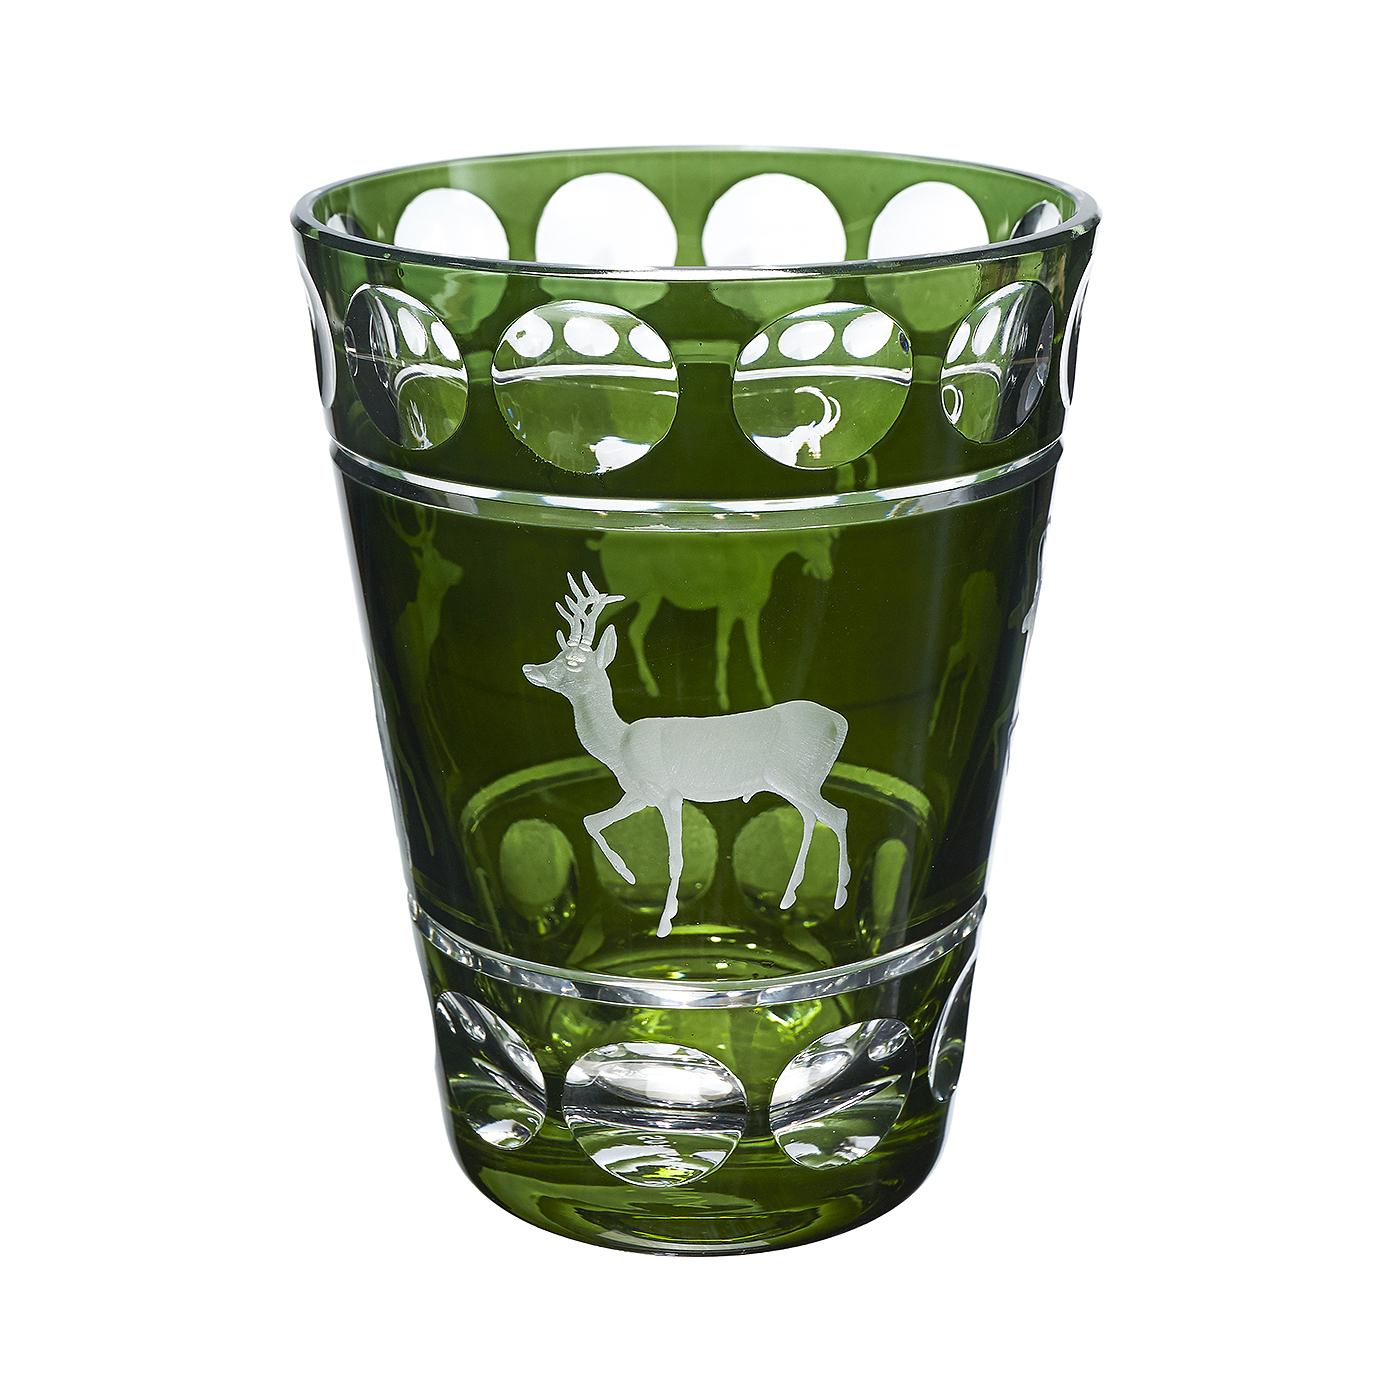 Vase aus mundgeblasenem grünem Kristallglas mit Jagdszene. Das Dekor ist ein Jagddekor mit 4 freihändig eingravierten Tieren im naturnahen Stil. Vollständig mundgeblasen und handgraviert in Bayern/Deutschland. Das hier gezeigte Glas ist in